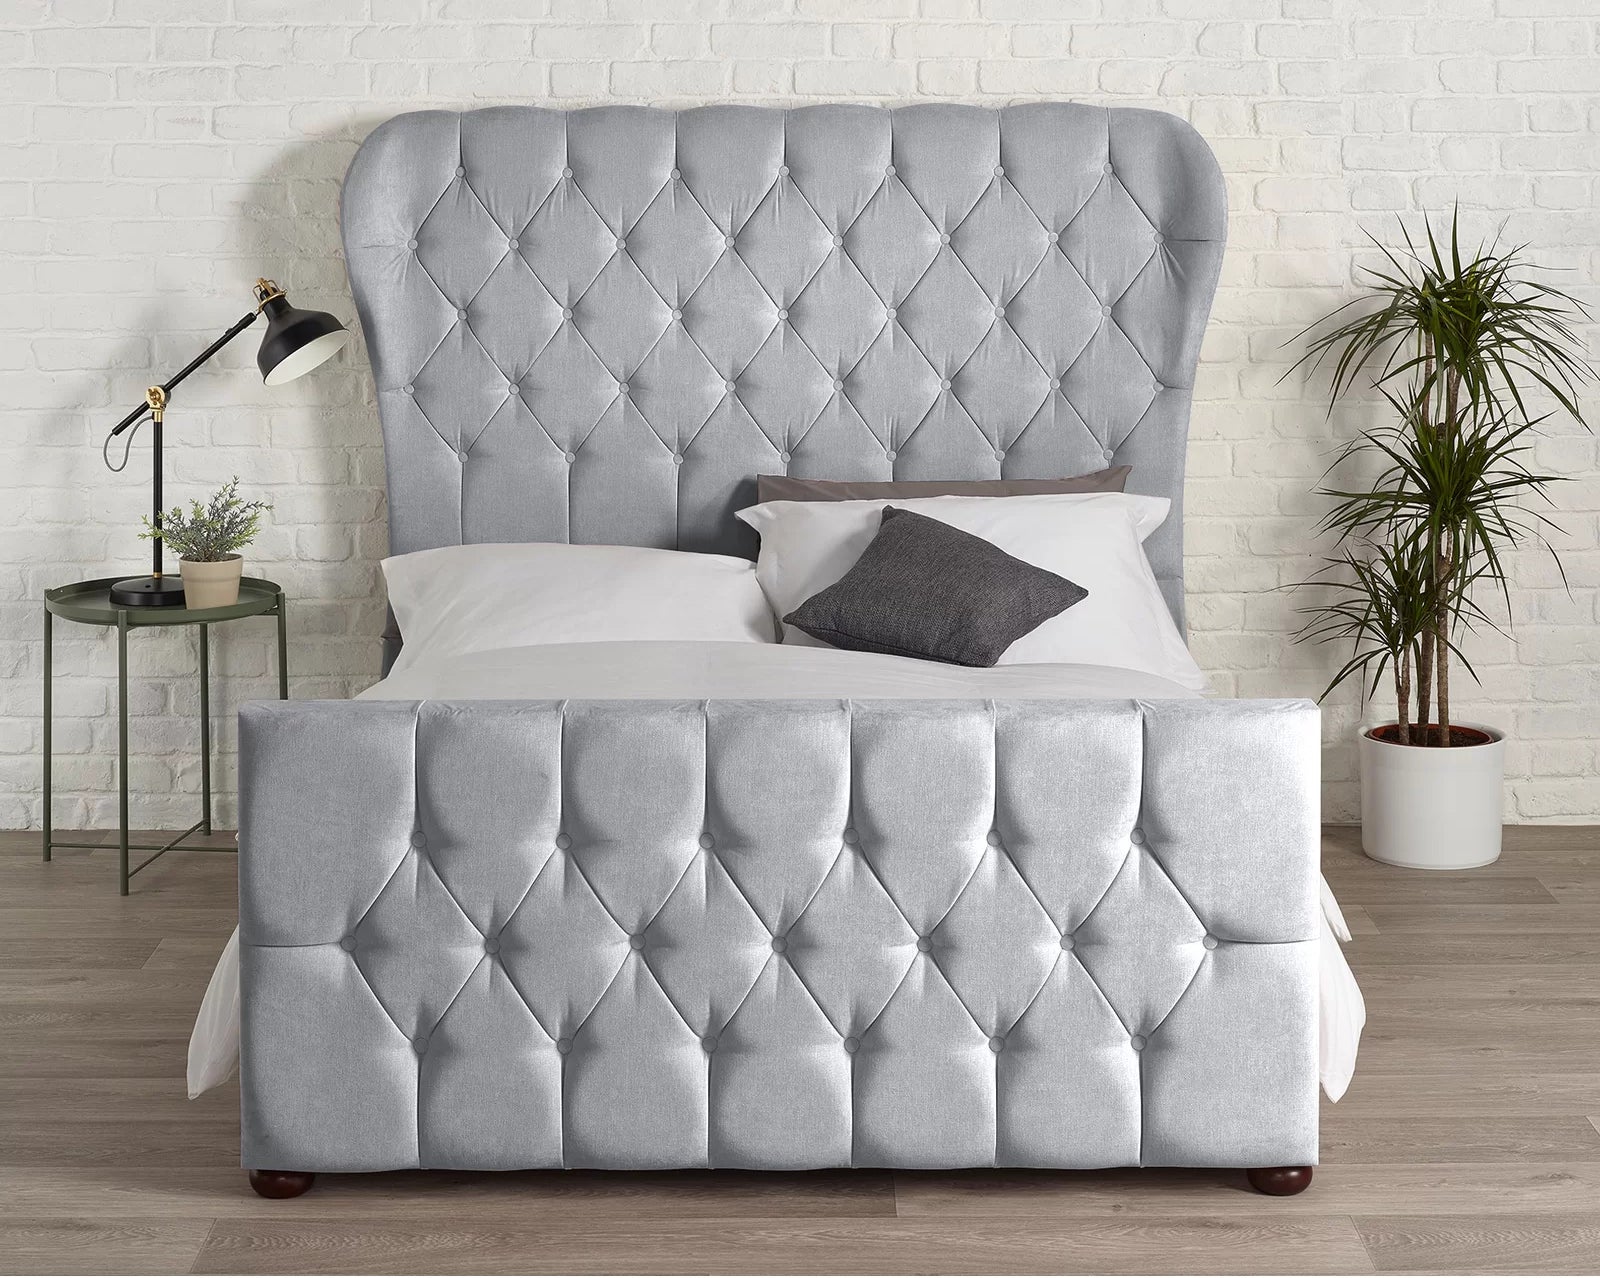 Sevina Winged Designer End Bed in Silver Naple - Bed Universe